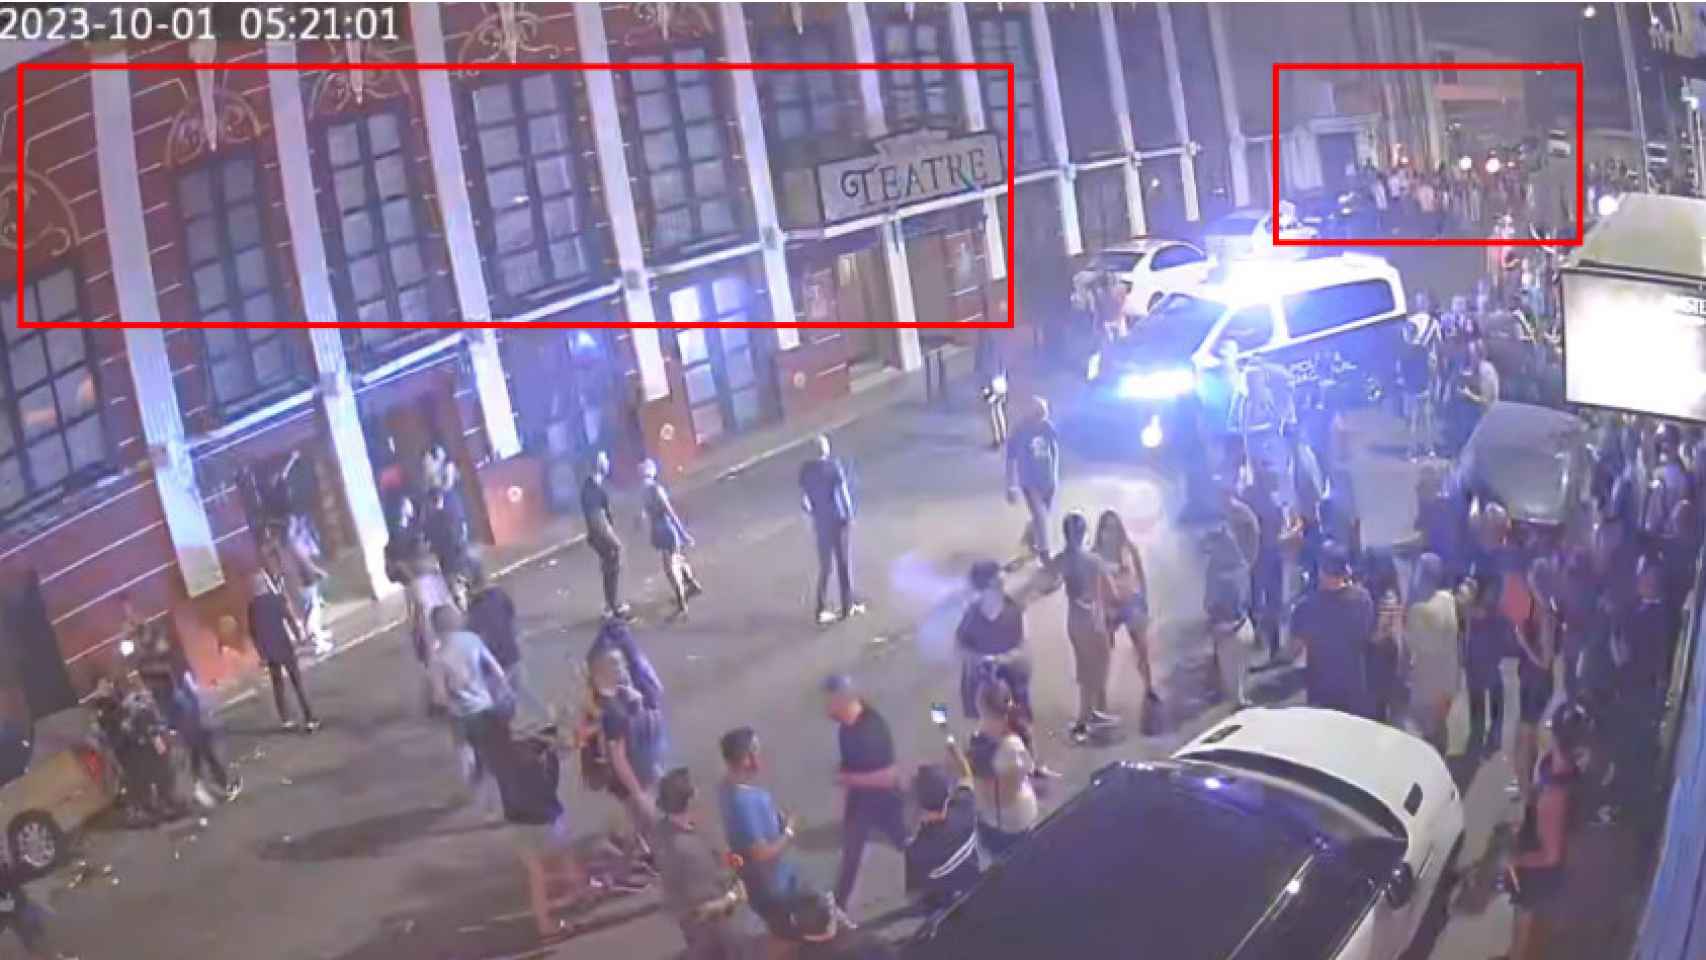 El desalojo de la Discoteca Teatre filmado por las cámaras de seguridad durante la trágica madrugada del 1 de octubre.